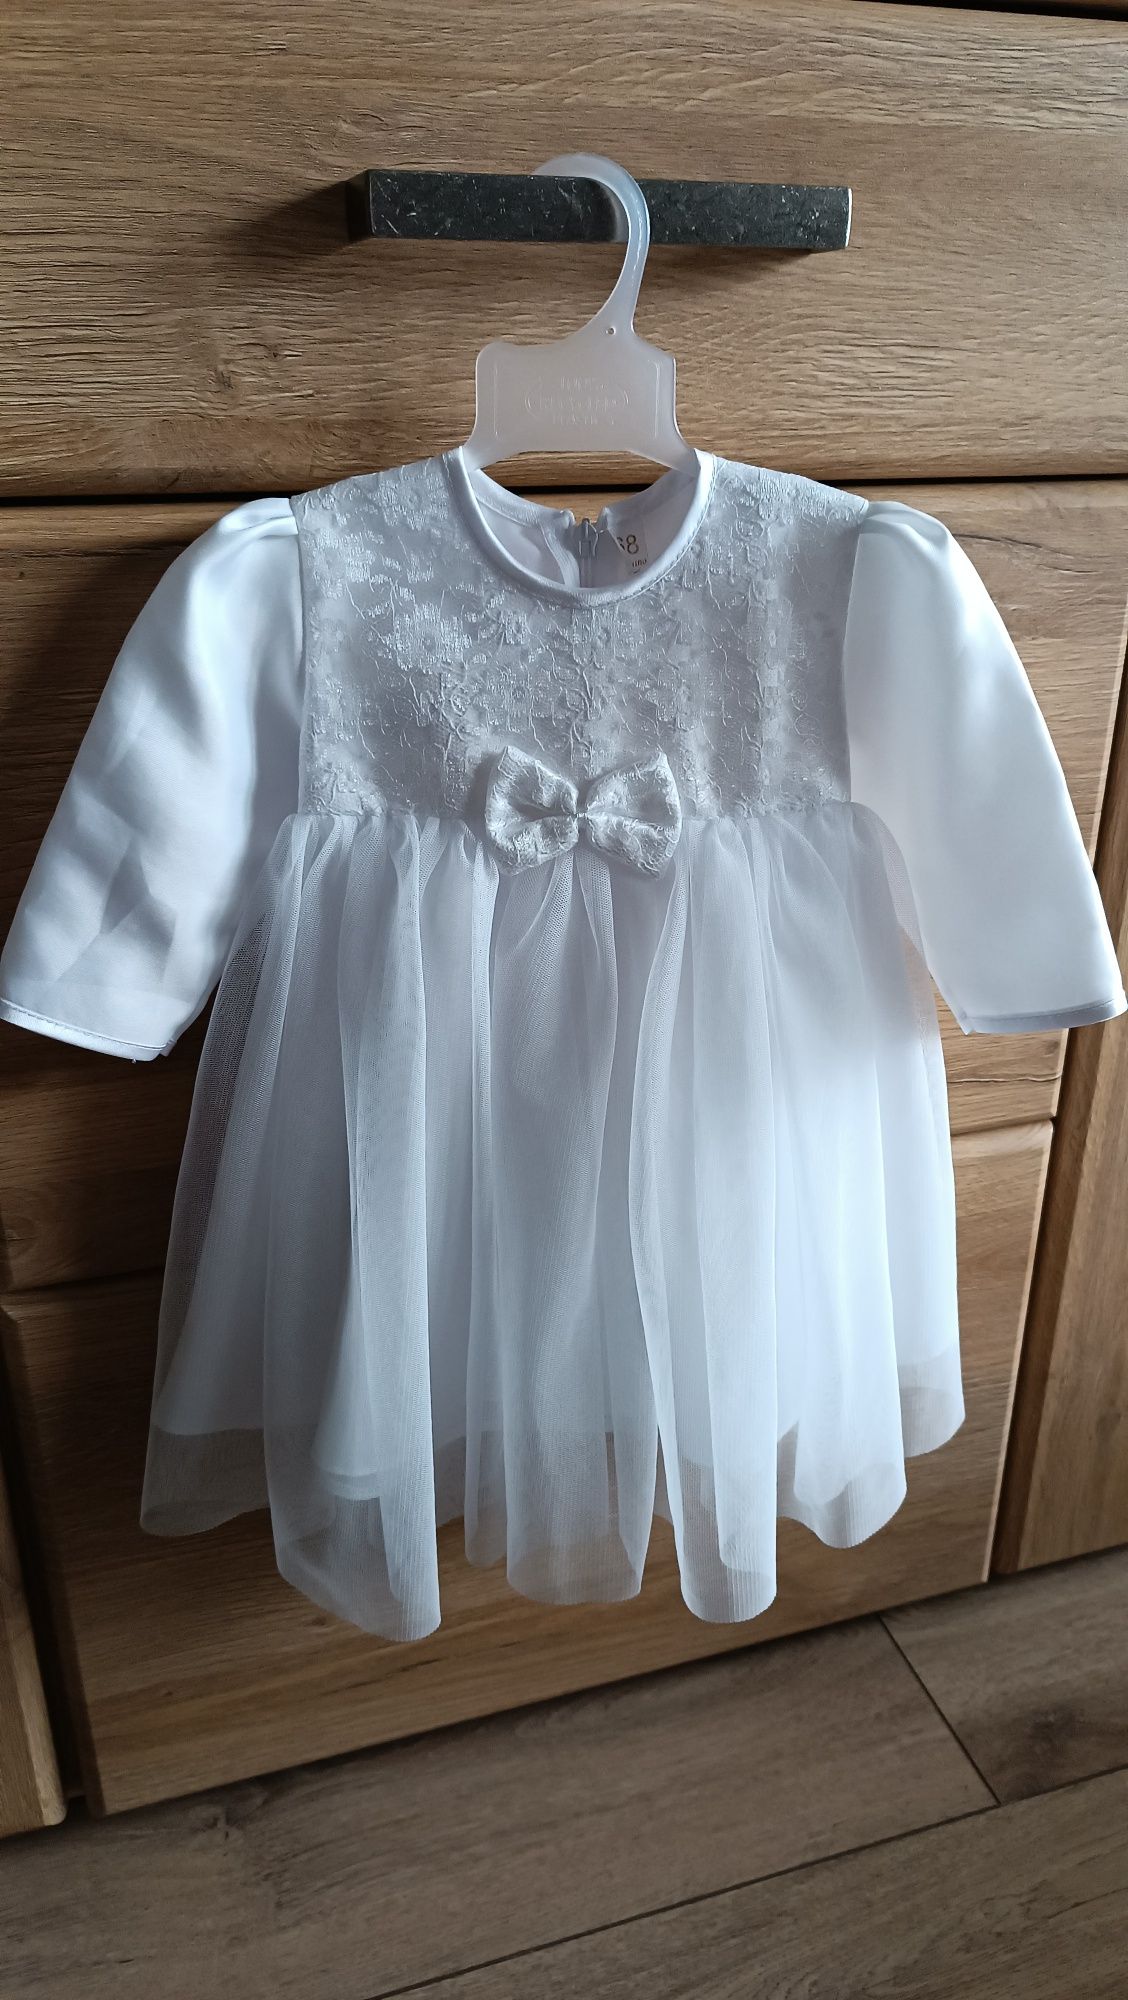 Zestaw ubranko do chrztu dla dziewczynki rozmiar 68 biały